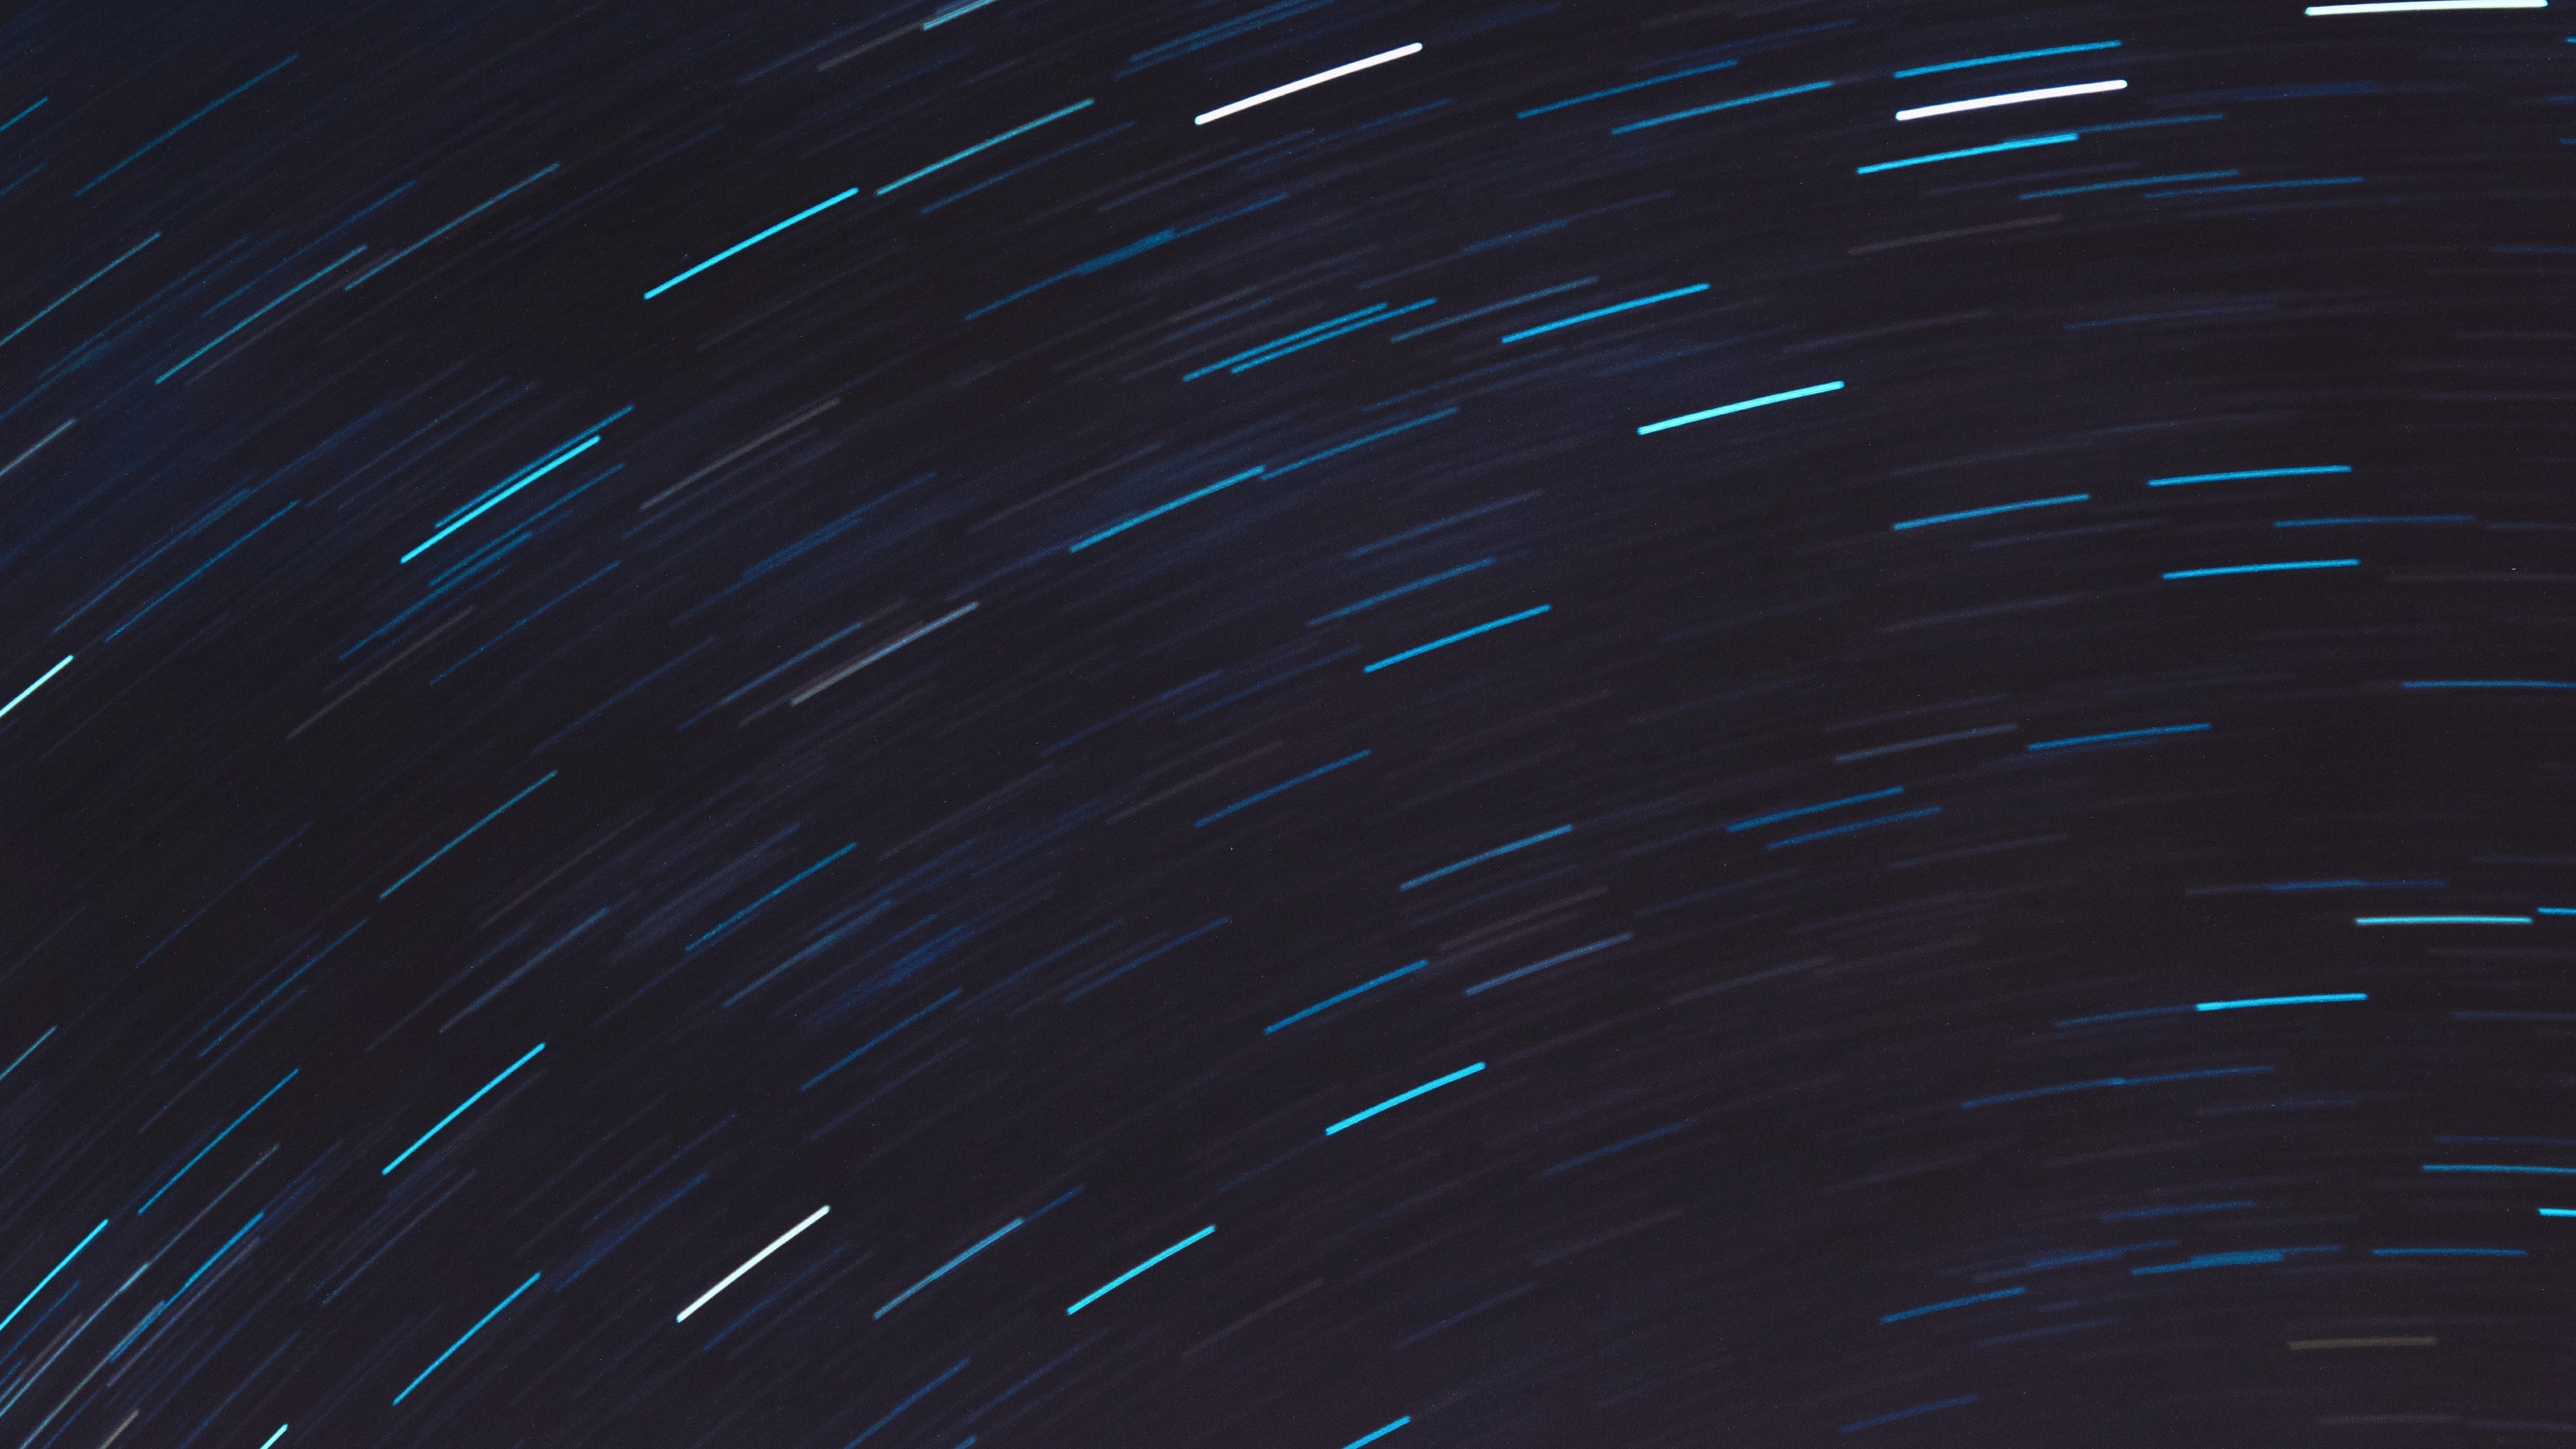 General 3840x2160 minimalism blue sky stars motion blur light trails star trails long exposure